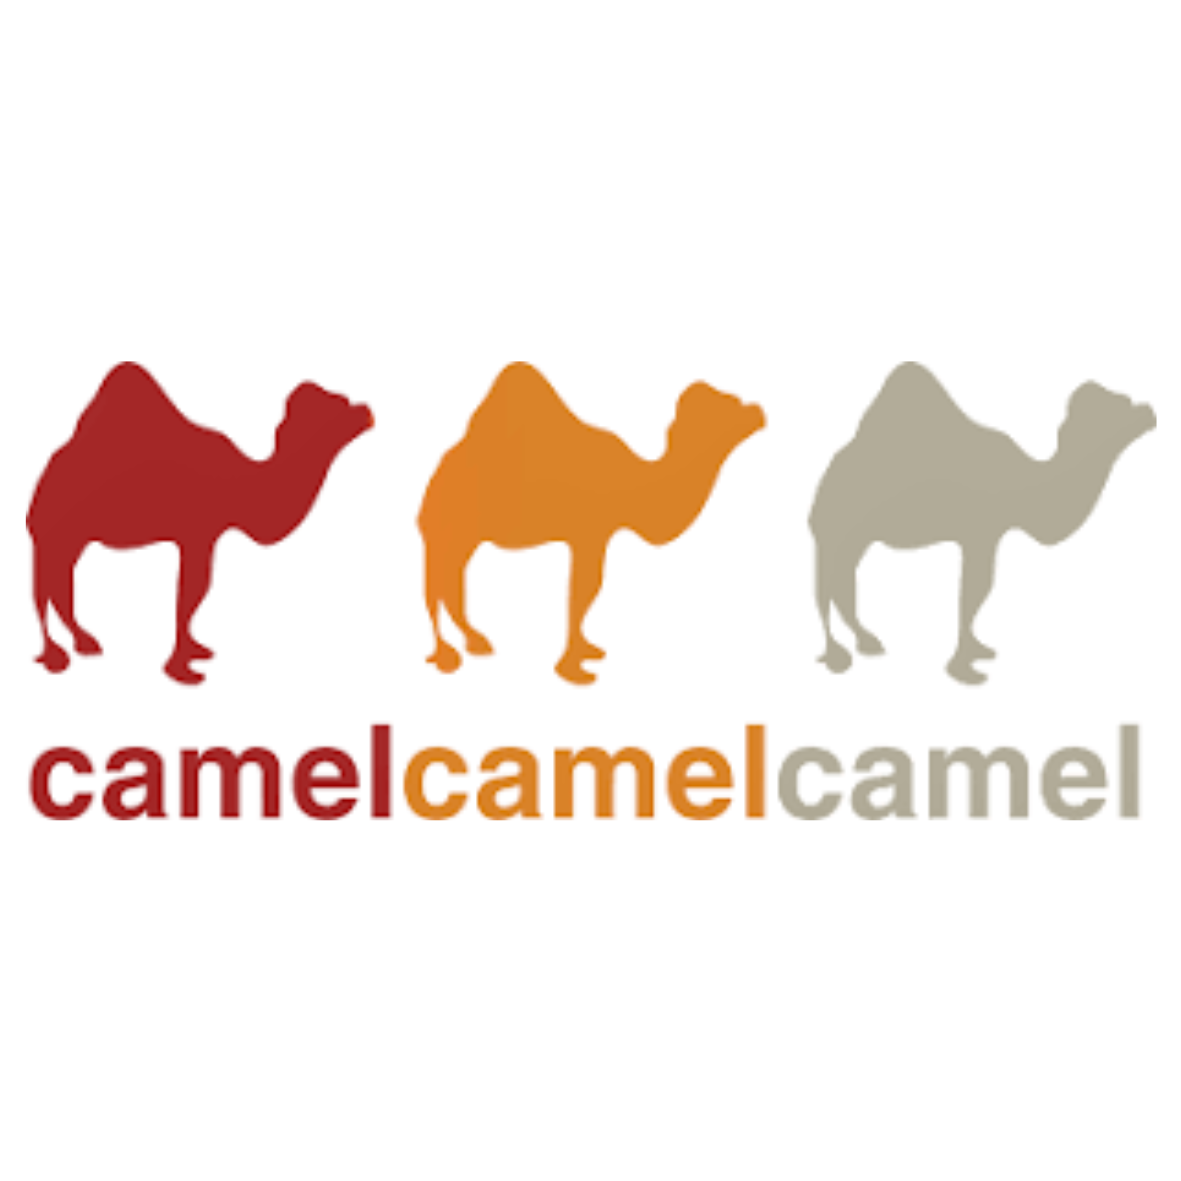 CamelCamelCamel, Amazon Oregon Prep Center